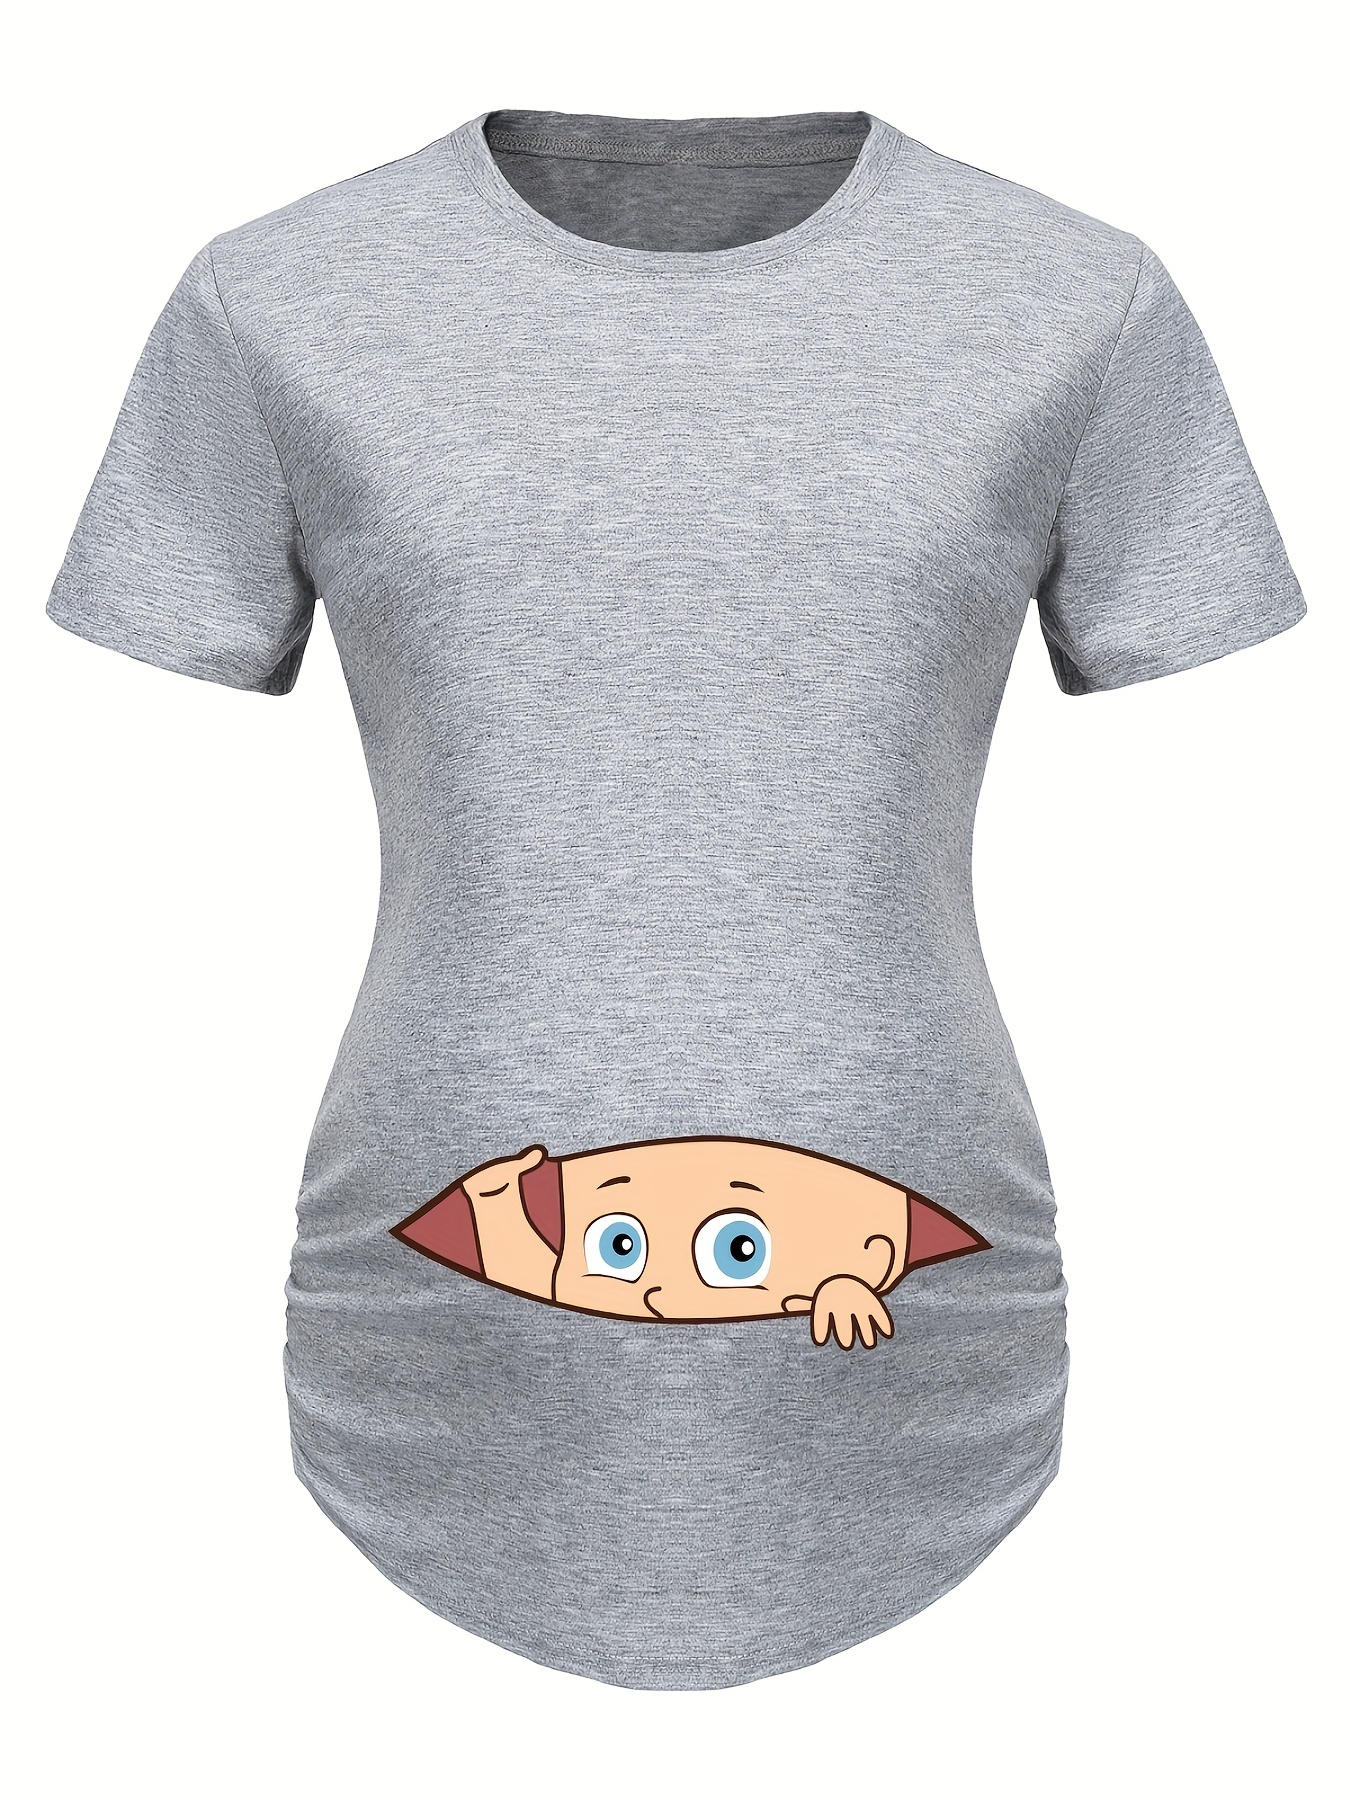  Camisetas de verano de maternidad para mujer